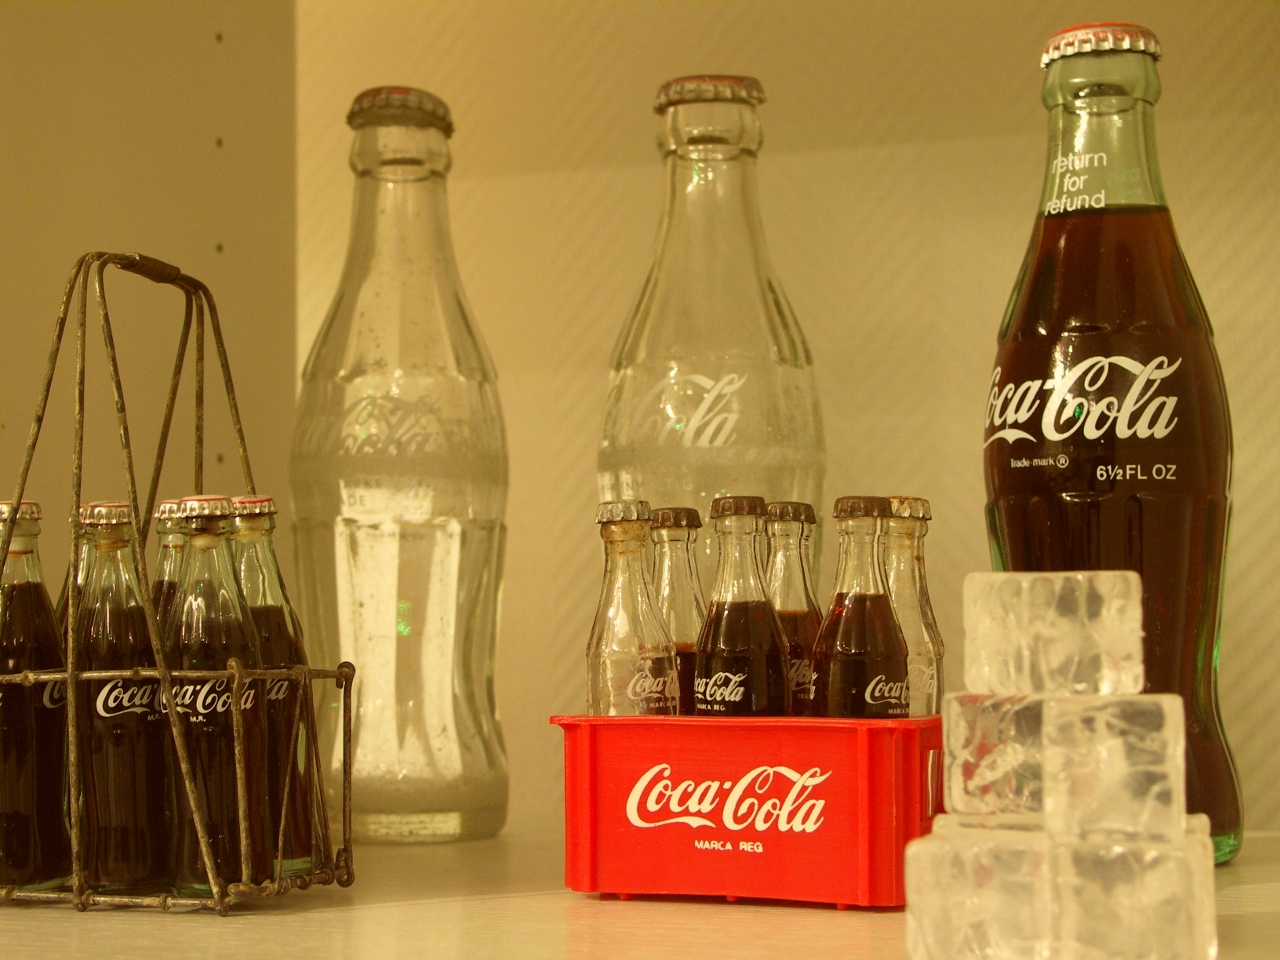 Coca cola company case study pdf